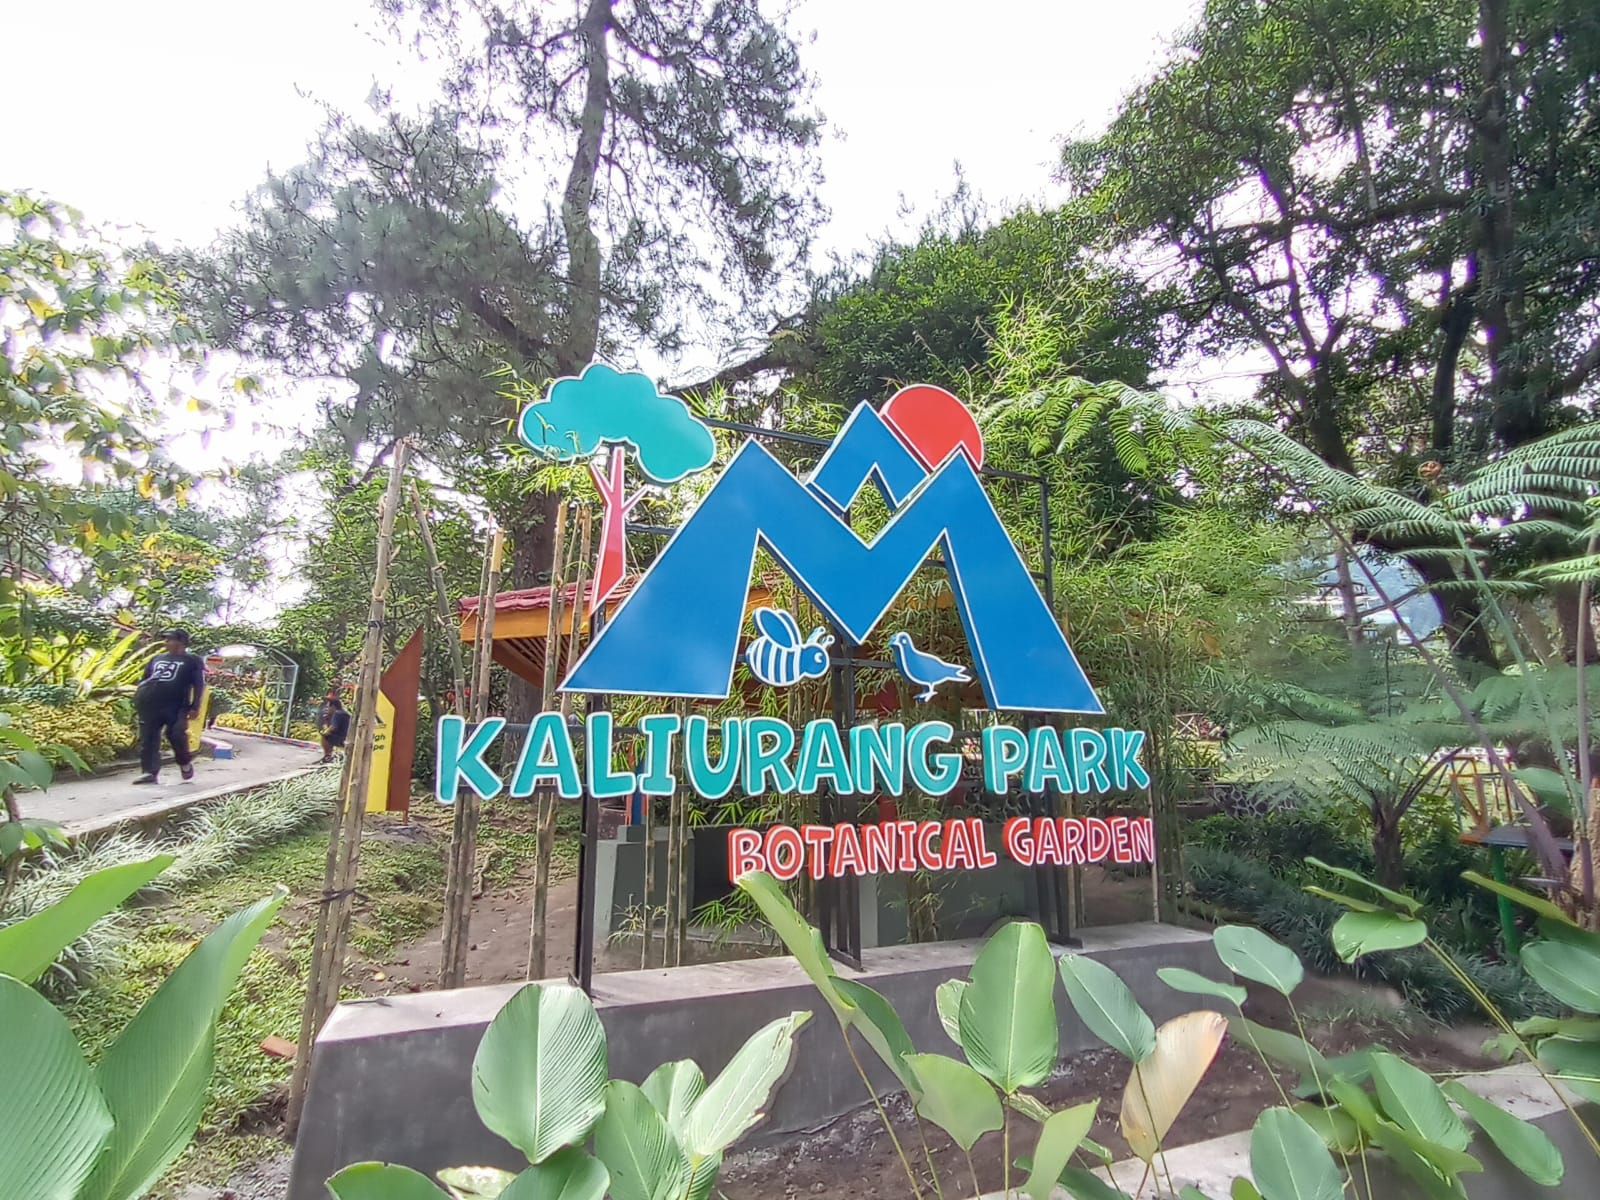 Inilah dua tempat wisata keluarga maupun wisata edukasi di Jogja, salah satunya Kaliurang Park Botanical Garden.